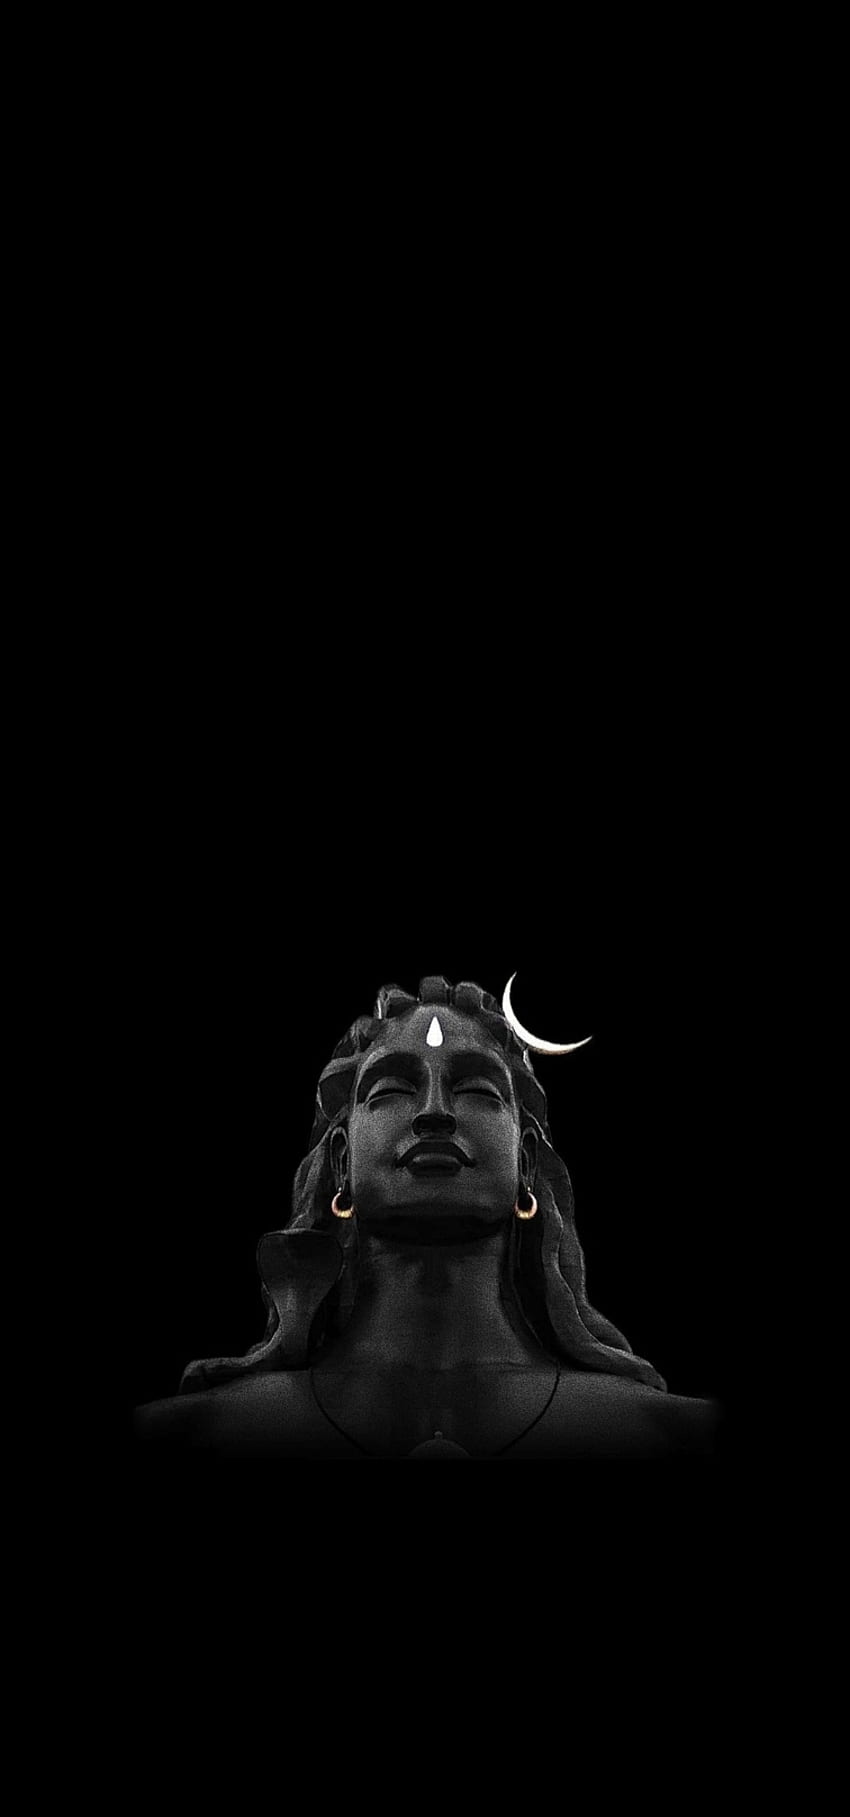 1) Cùng khám phá bức hình nền Lord Shiva HD độ phân giải cao nhất với những nét chấm phá đầy tinh tế, người xem sẽ thật sự như được đắm chìm trong nhịp sinh hoạt của Nhân loại. 2) Hãy trải nghiệm cảm giác đắm mình vào black bí ẩn trong bức ảnh sử dụng Black background đầy thú vị này. Tùng chiêm ngưỡng và khám phá những điều mới mẻ mà màu đen muôn thuở mang lại. 3) Khám phá những hình ảnh mang đậm tinh thần Truyền Thống, những bức ảnh hài hòa phối hợp màu sắc, ánh sáng mang đến cho người xem không khí tĩnh lặng, thuần khiết của Spiritual.